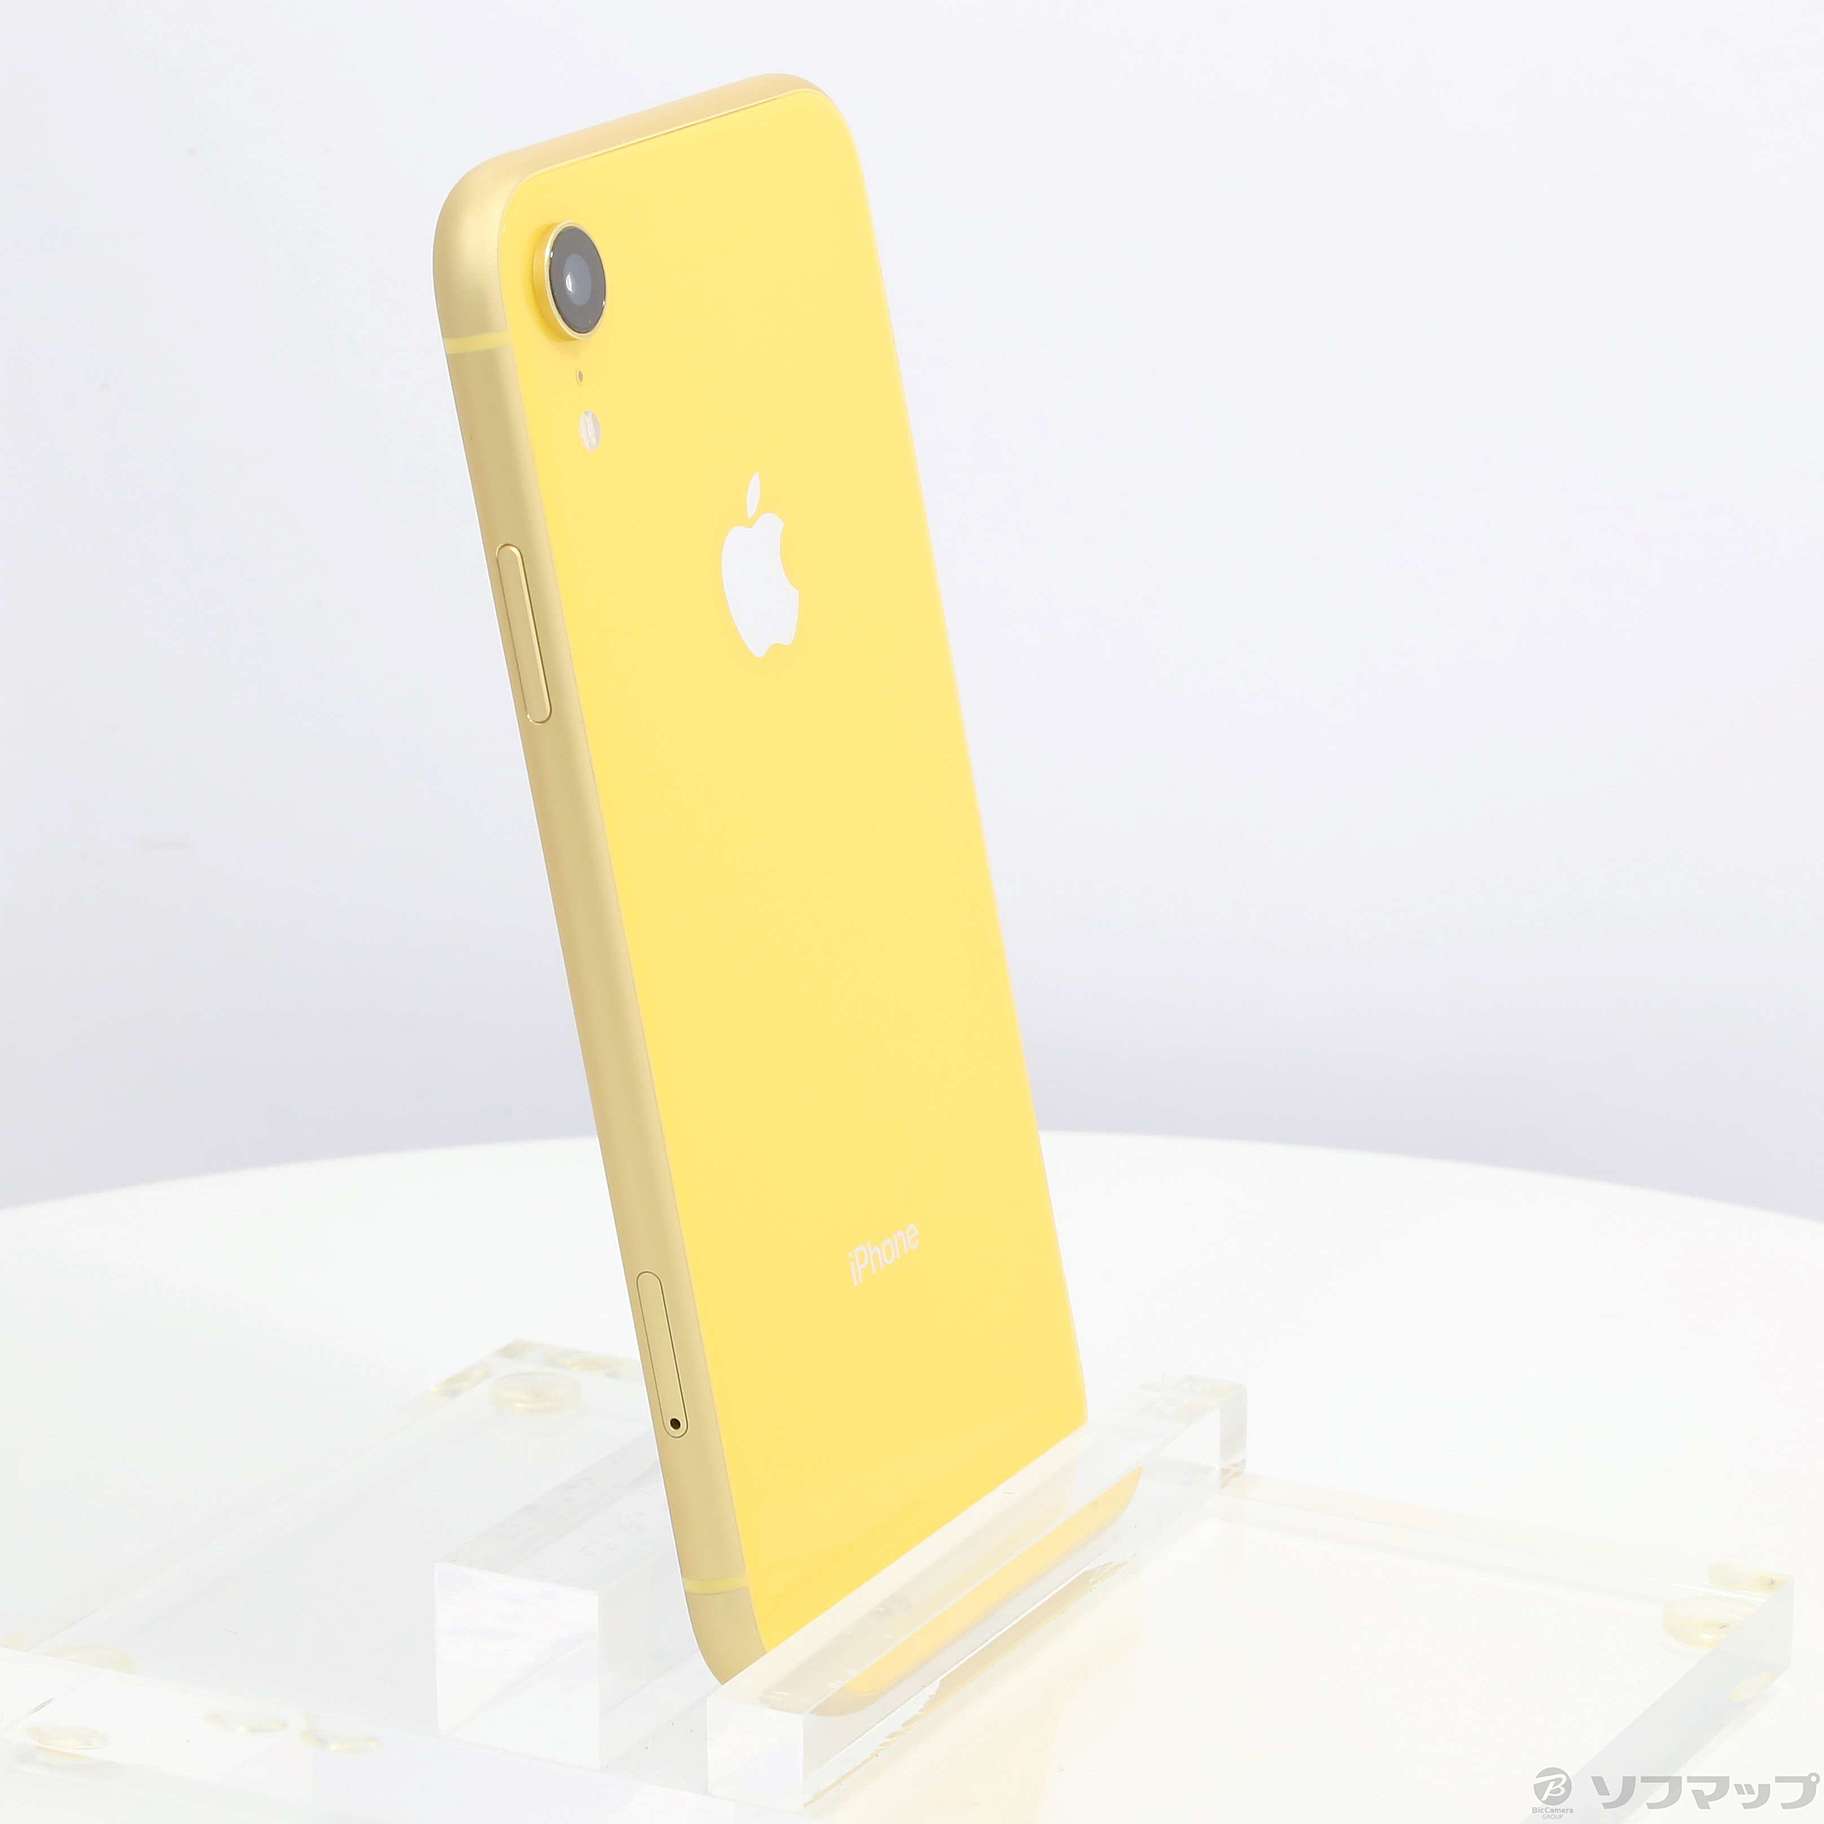 9,020円Apple iPhoneXR 128GB yellow SIMフリー アップル